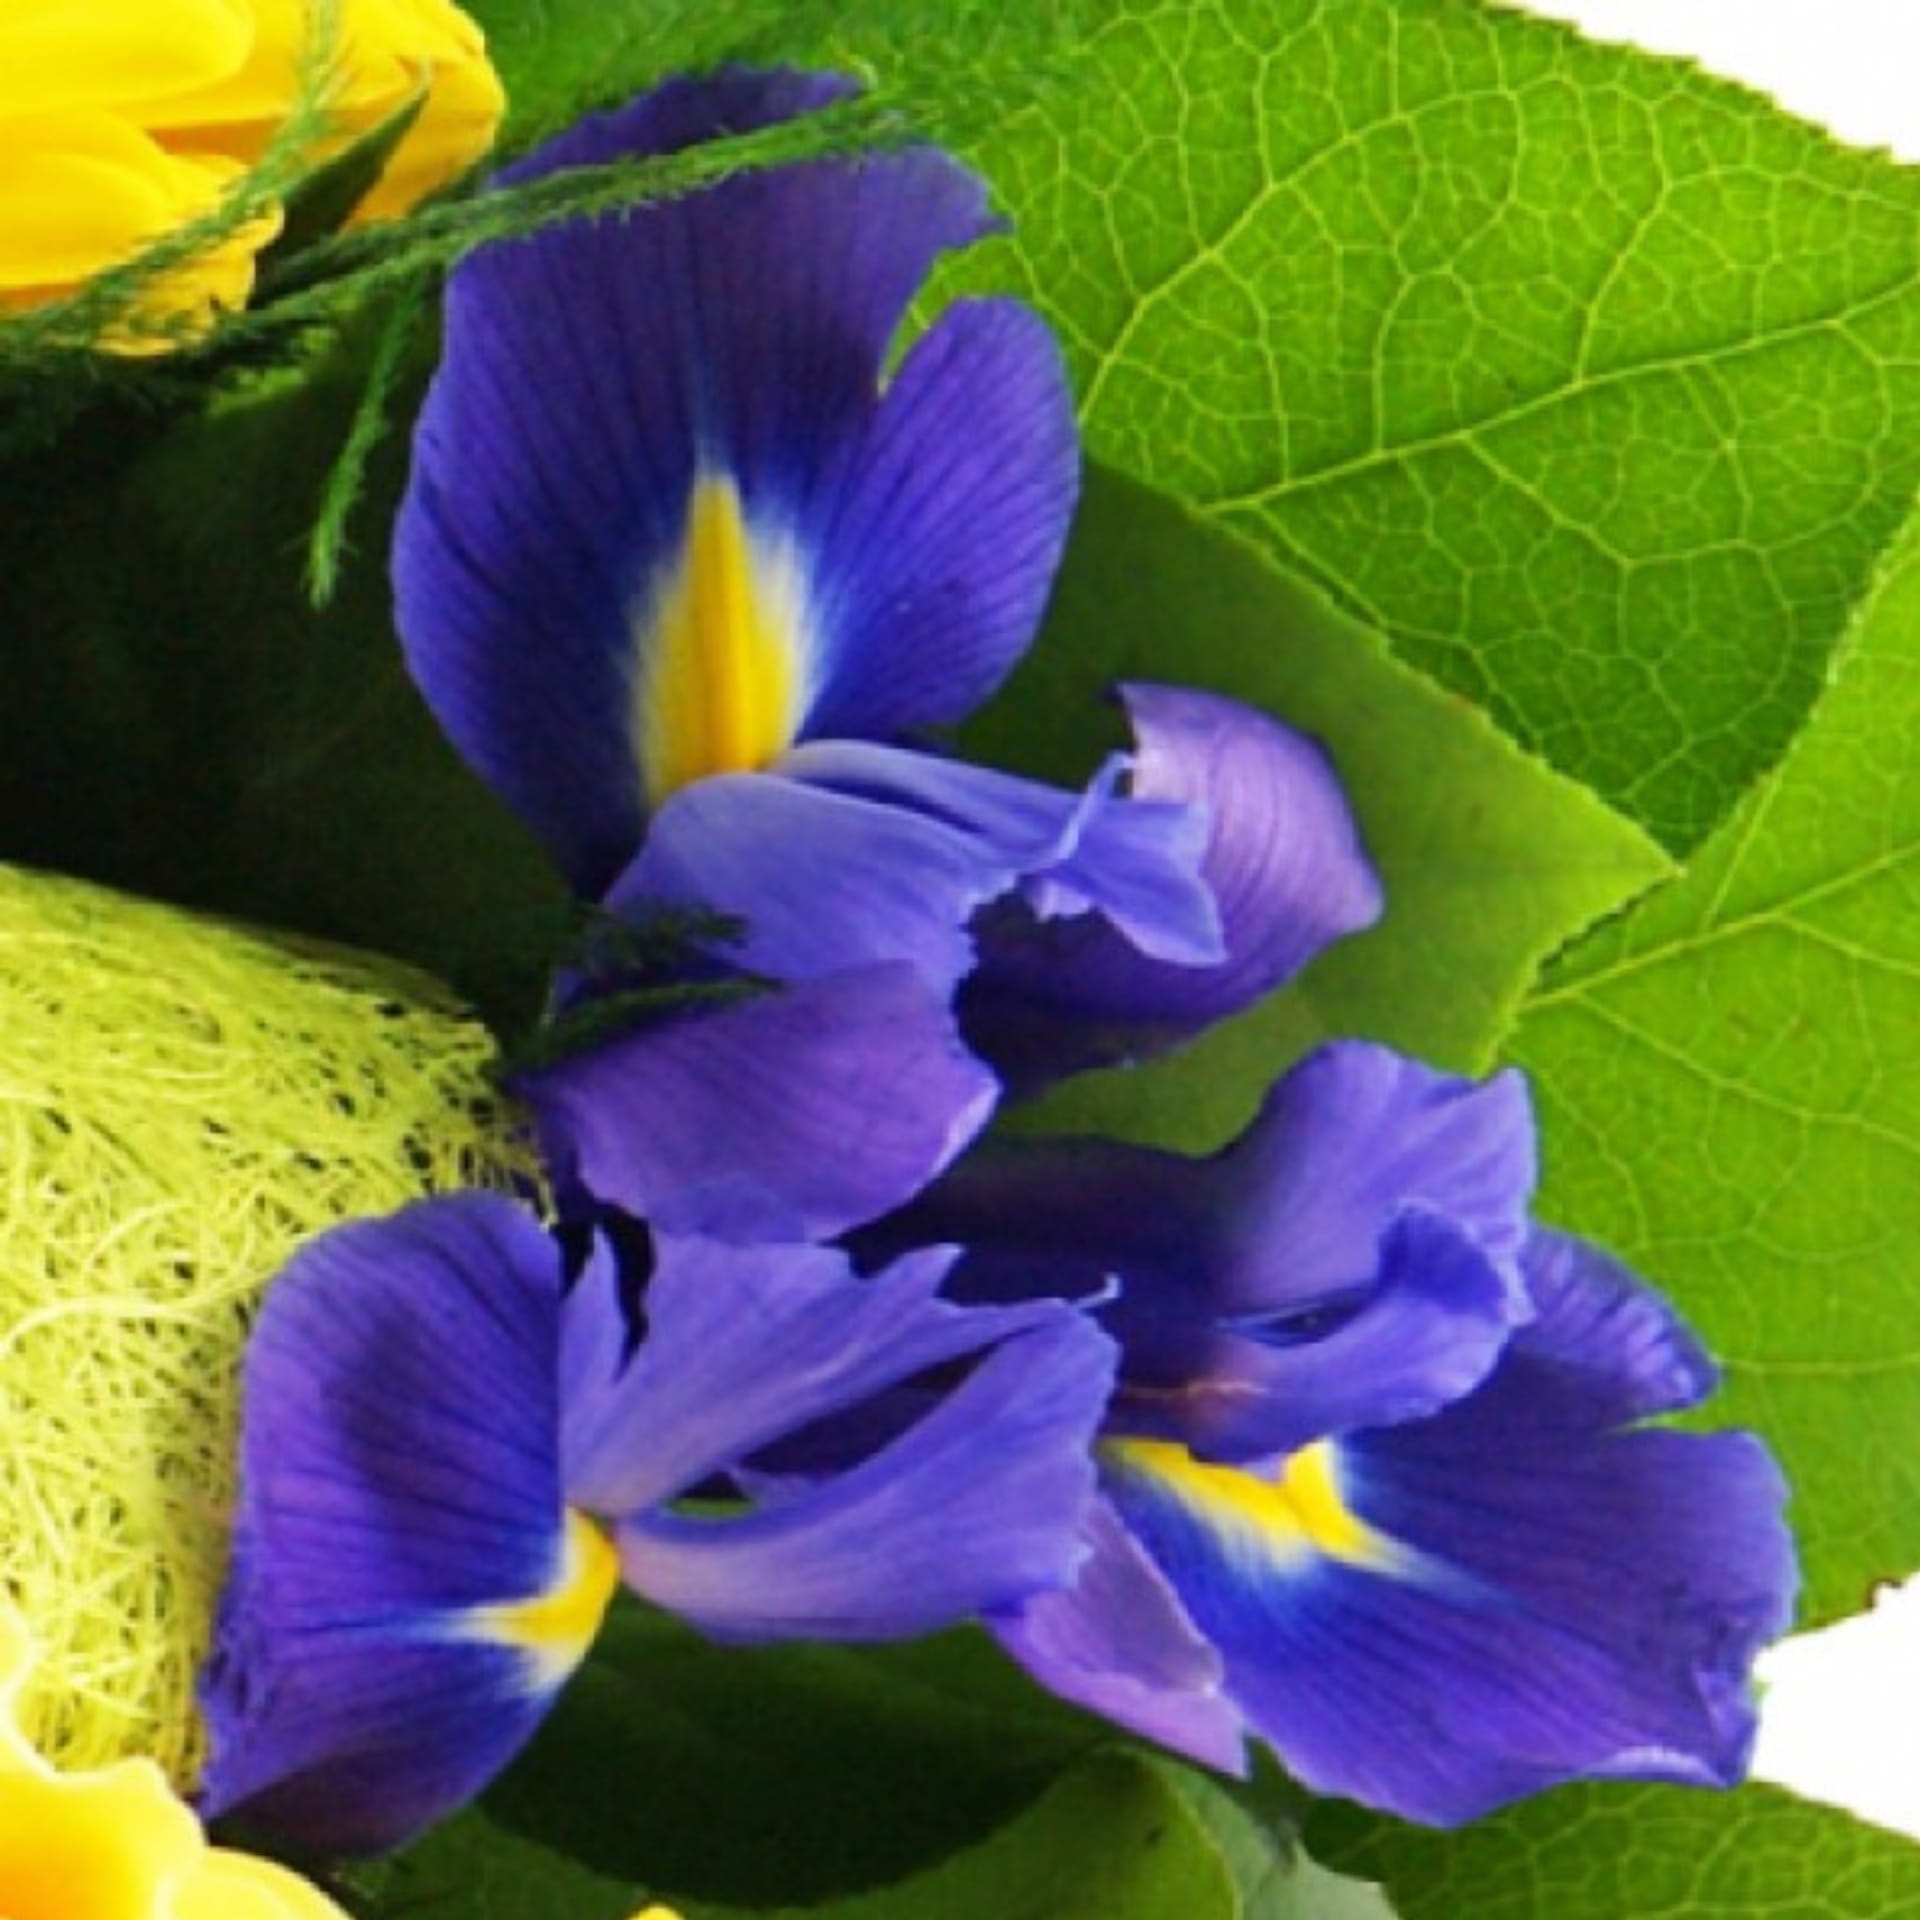 Nahaufnahme einer blauen Iris im Blumenstrauß eingebunden